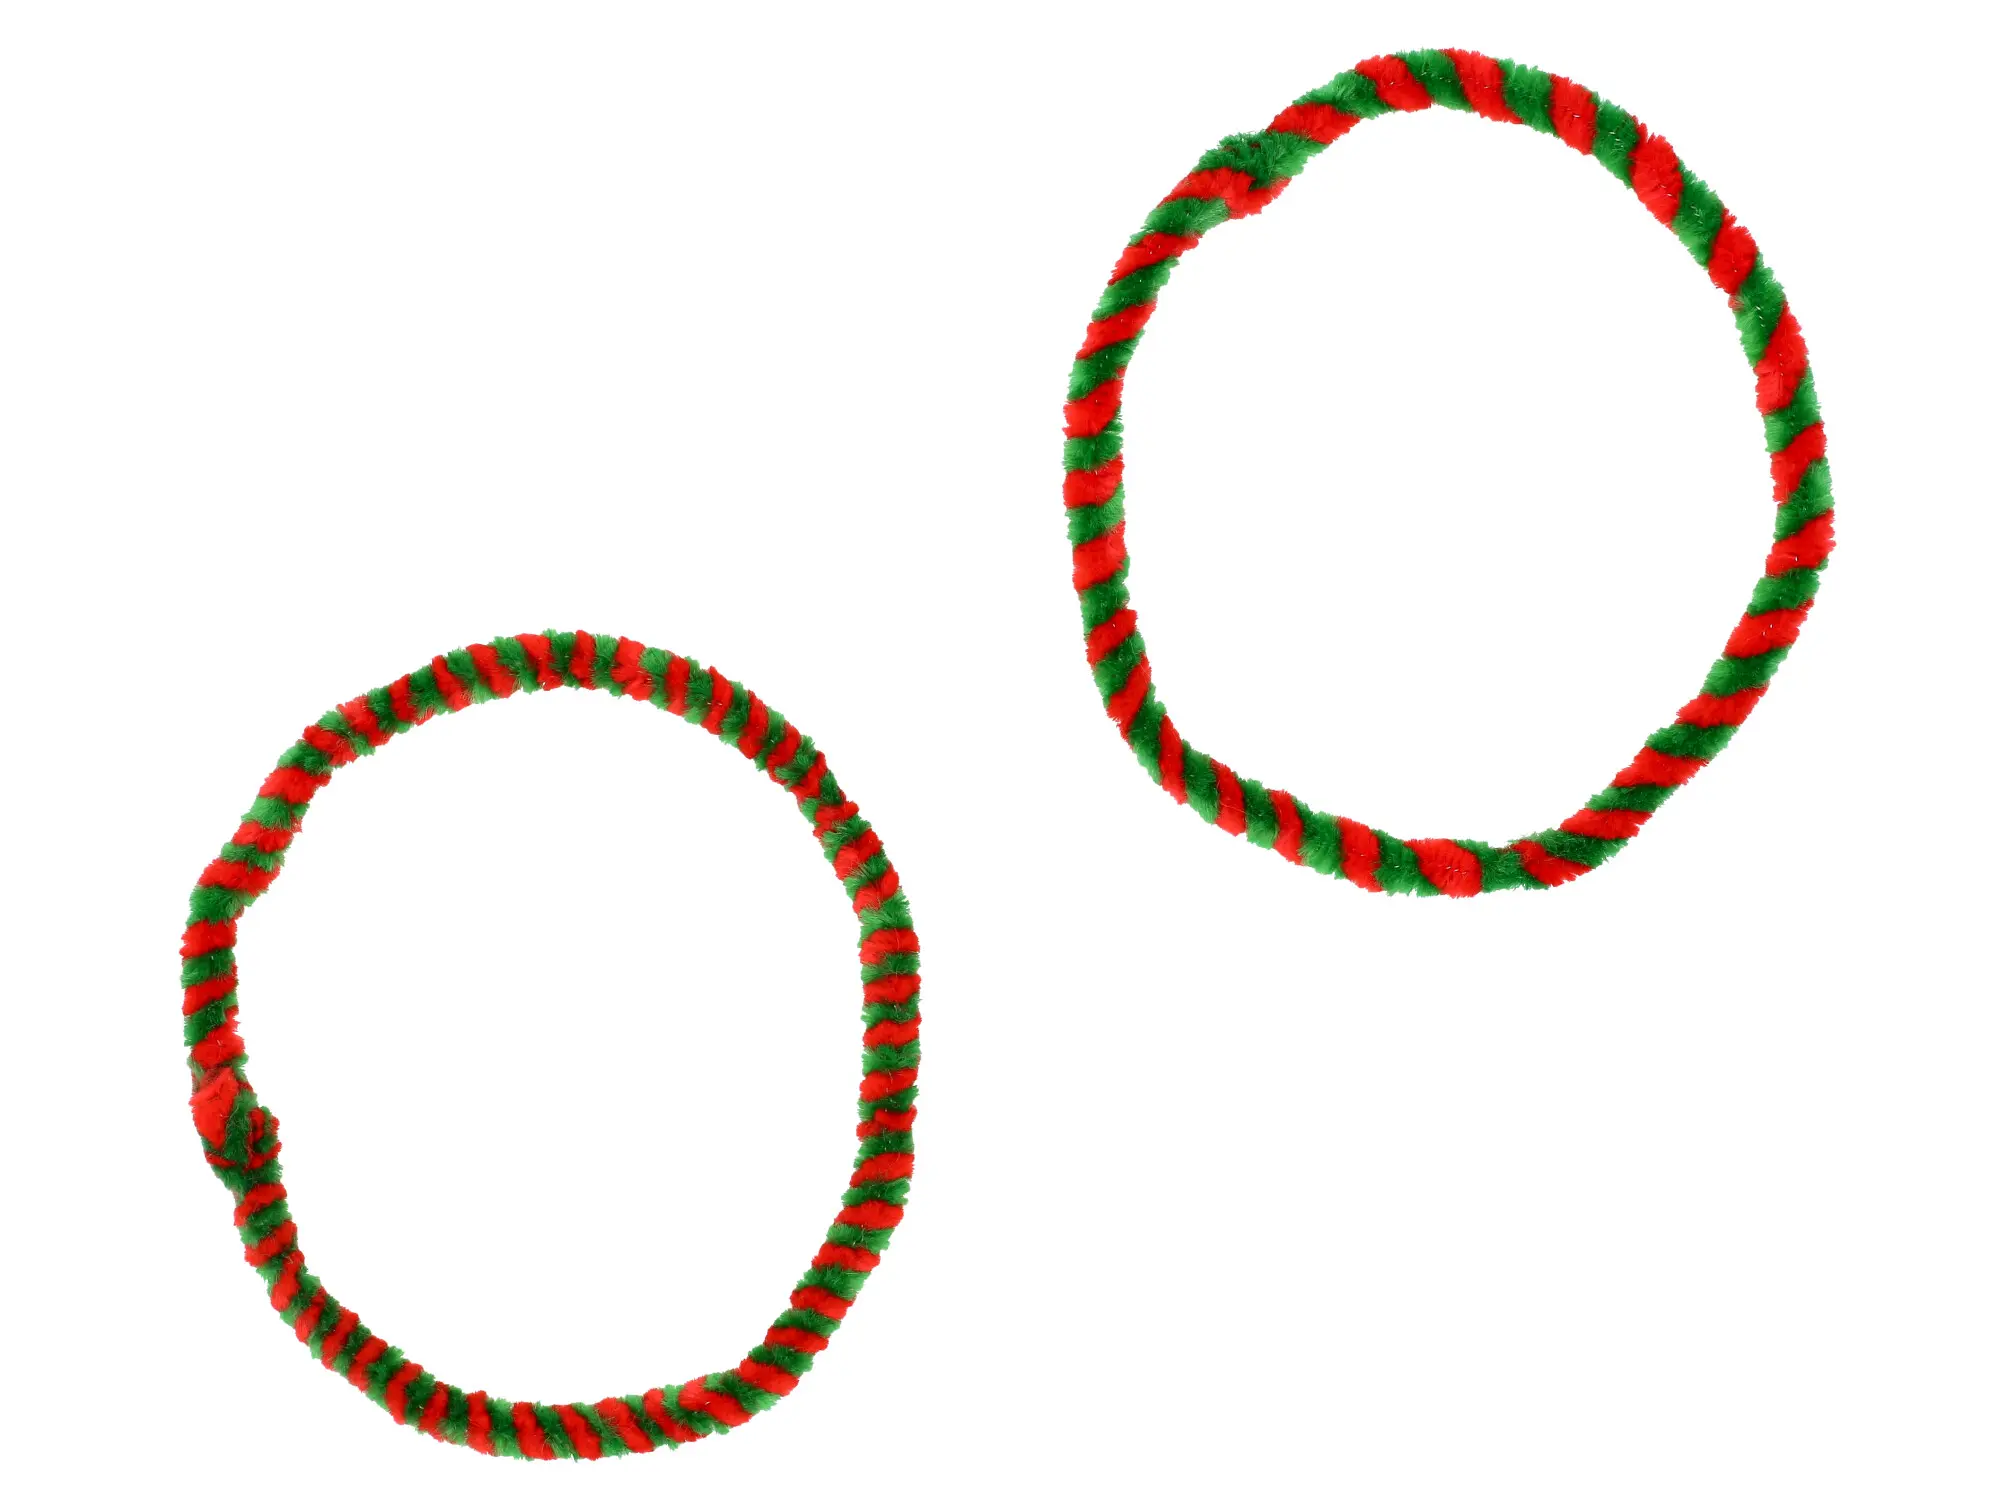 Nabenputzringe Rot/Grün (Set 1x 25cm + 1x 30cm für Fahrrad), Art.-Nr.: 10078581 - Bild 1